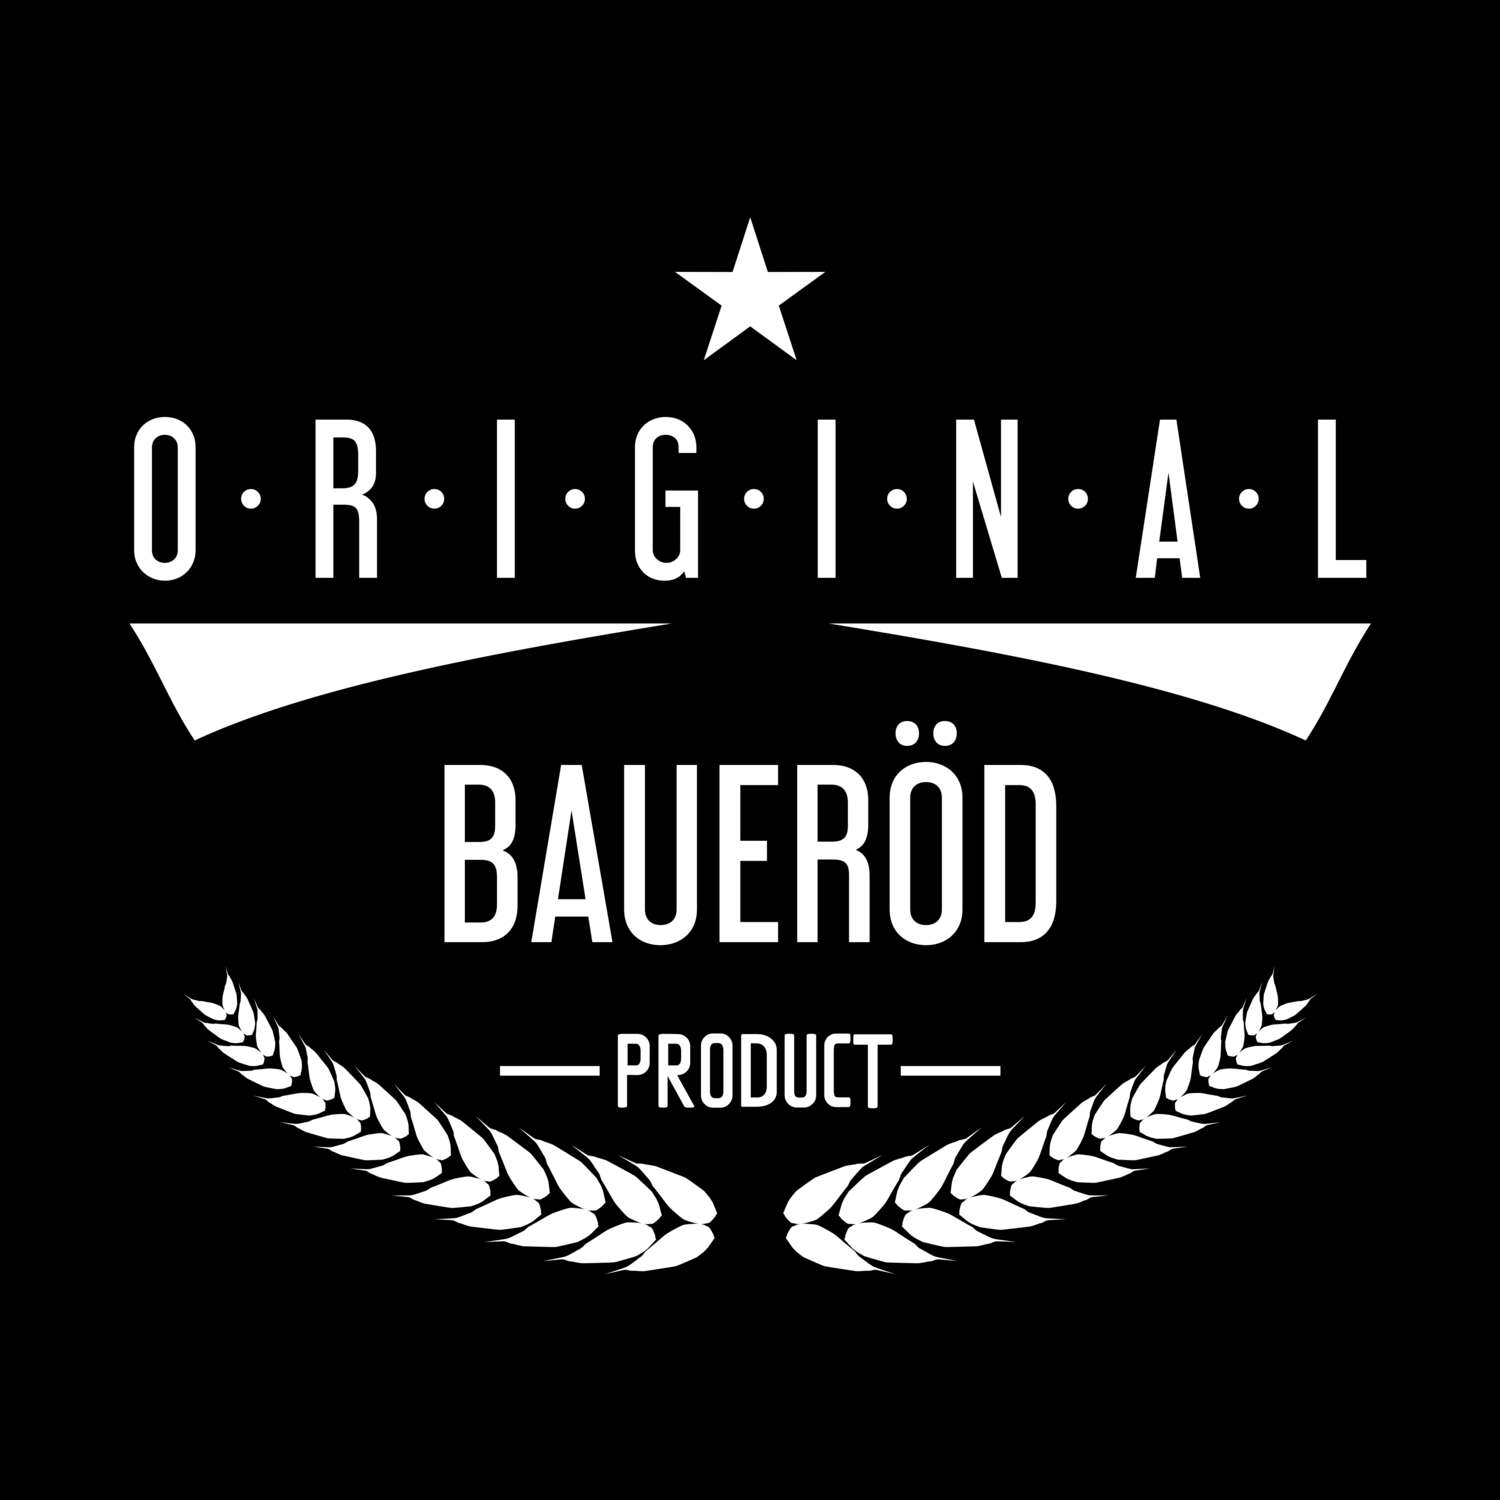 Baueröd T-Shirt »Original Product«